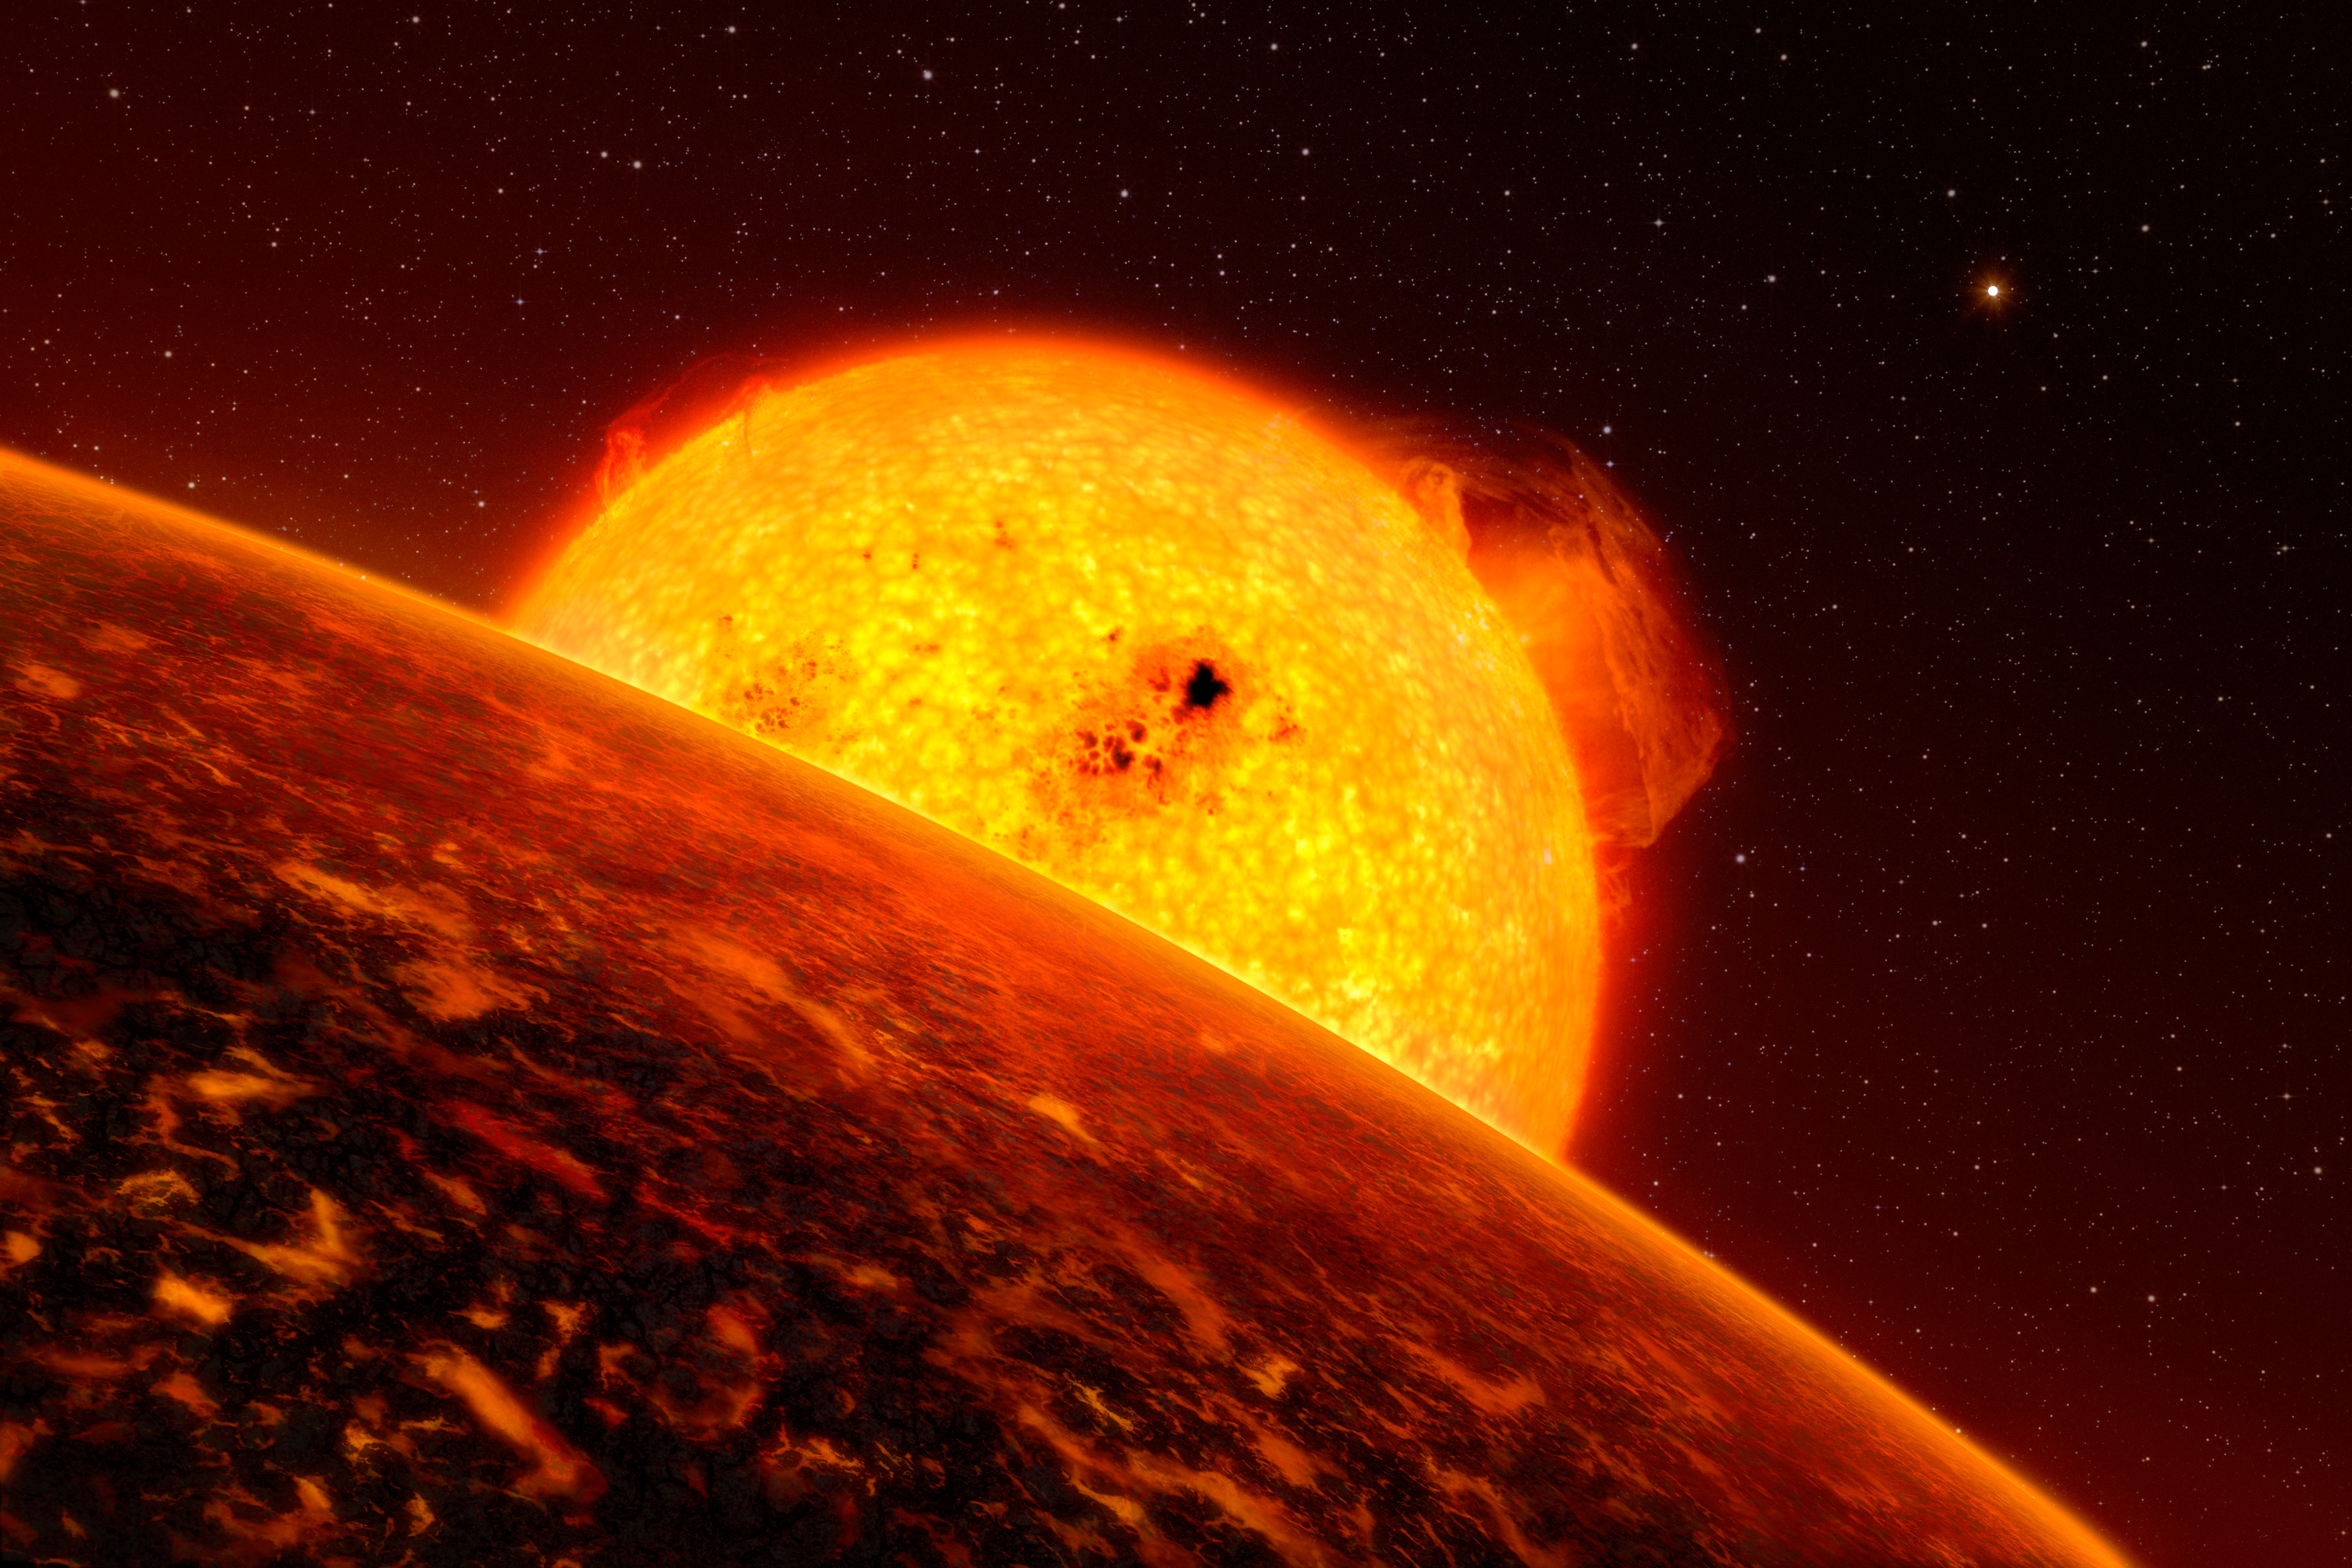 L'exoplanète Corot-7b est proche de son étoile, ressemblant au Soleil, et doit endurer d'extrêmes conditions. Cette planète a une masse environ cinq fois plus grande que celle de la Terre. Elle&nbsp;est en fait l'exoplanète que l'on connaît la plus proche de son étoile, qui fait d'elle également la plus rapide, elle orbite son étoile à une vitesse de plus de 750.000 kilomètres par heure. La probable température sur sa surface est au-dessus de 2.000 degrés durant la journée mais de moins 200 degrés la nuit. Des modèles théoriques suggèrent que la planète est peut-être couverte de lave et d'océans bouillants. Un artiste a produit une impression de ce à quoi la planète pourrait ressembler si elle était couverte de lave. La planète sœur, Corot-7c, peut être vue dans la distance. ©&nbsp;ESO, L. Calcada&nbsp;&nbsp;&nbsp;&nbsp;